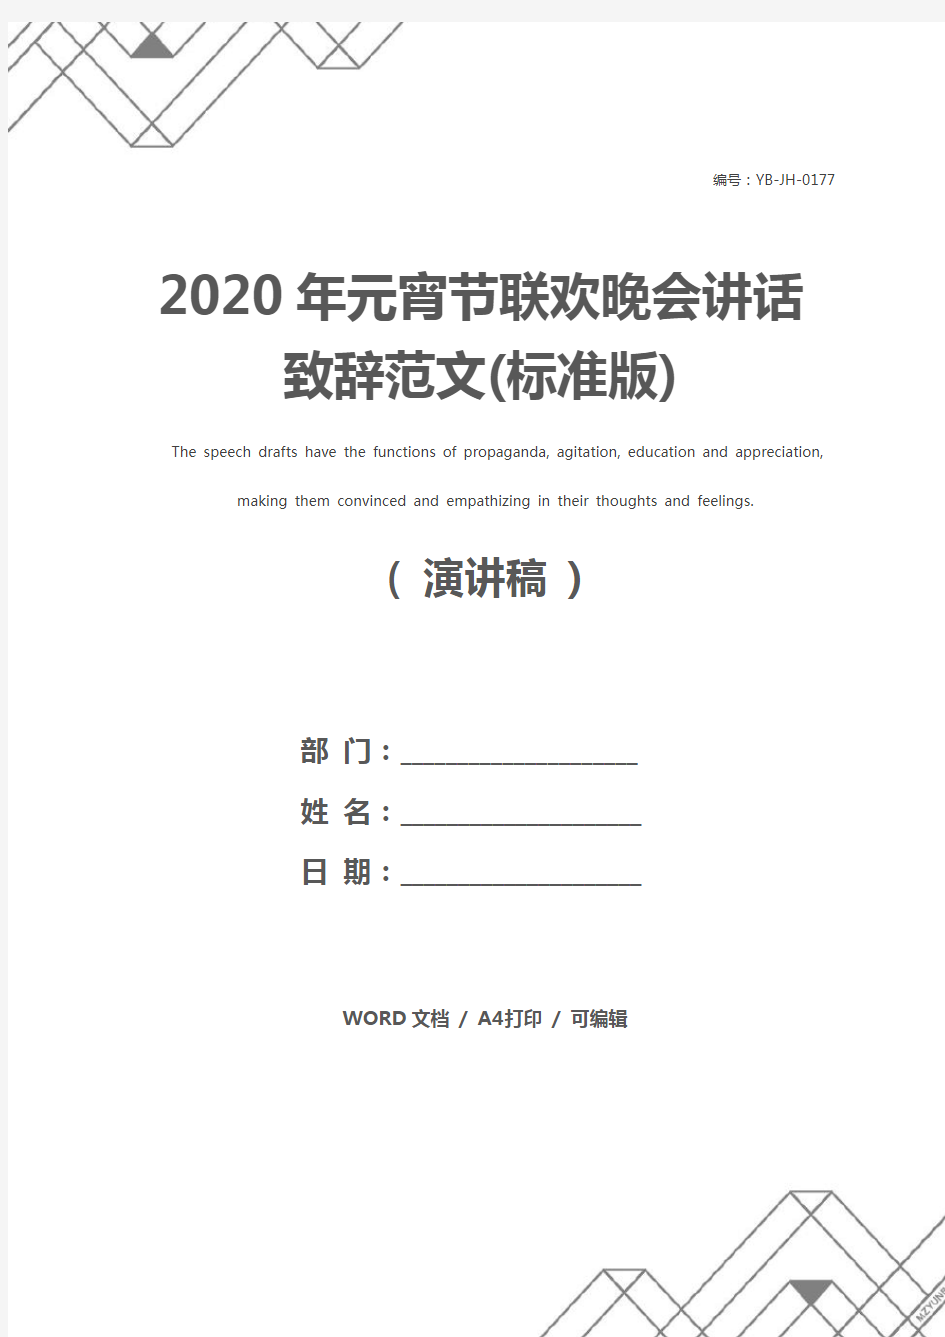 2020年元宵节联欢晚会讲话致辞范文(标准版)